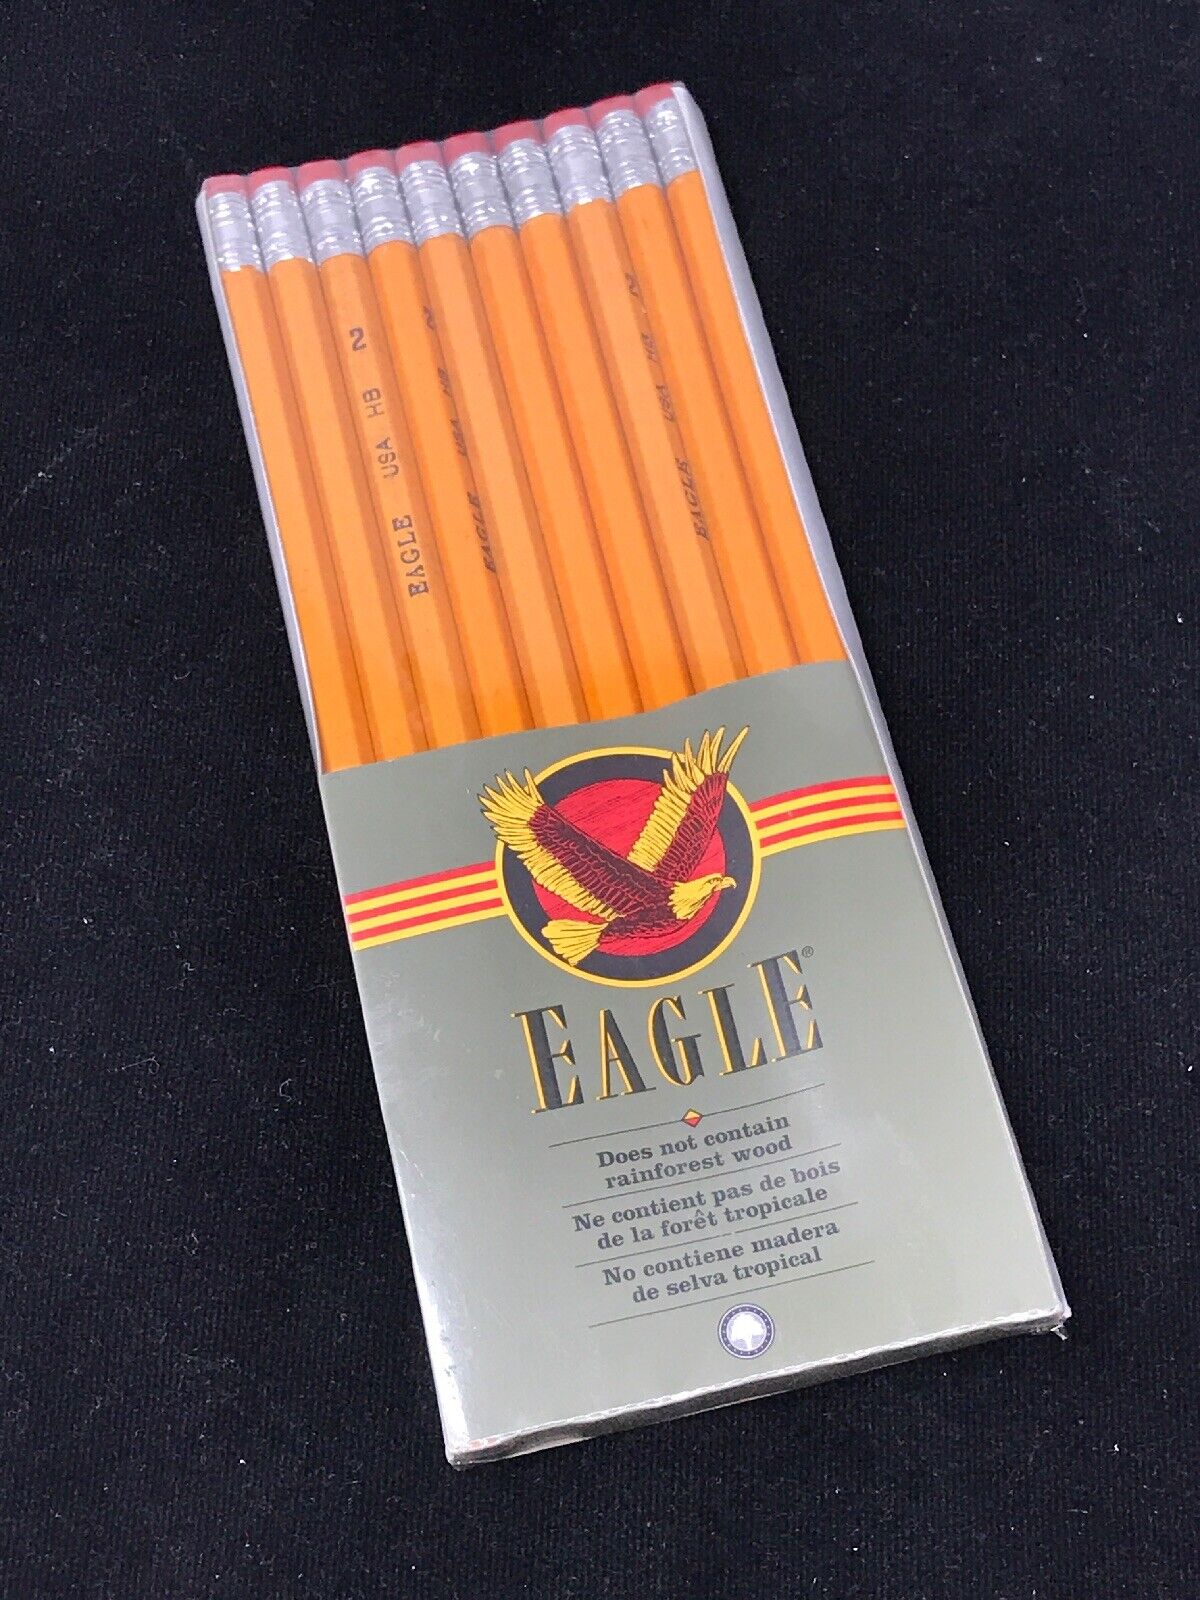 10 New NOS VTG Eagle HB No 2 Pencil Unsharpened NO RAINFOREST Wood USA Made